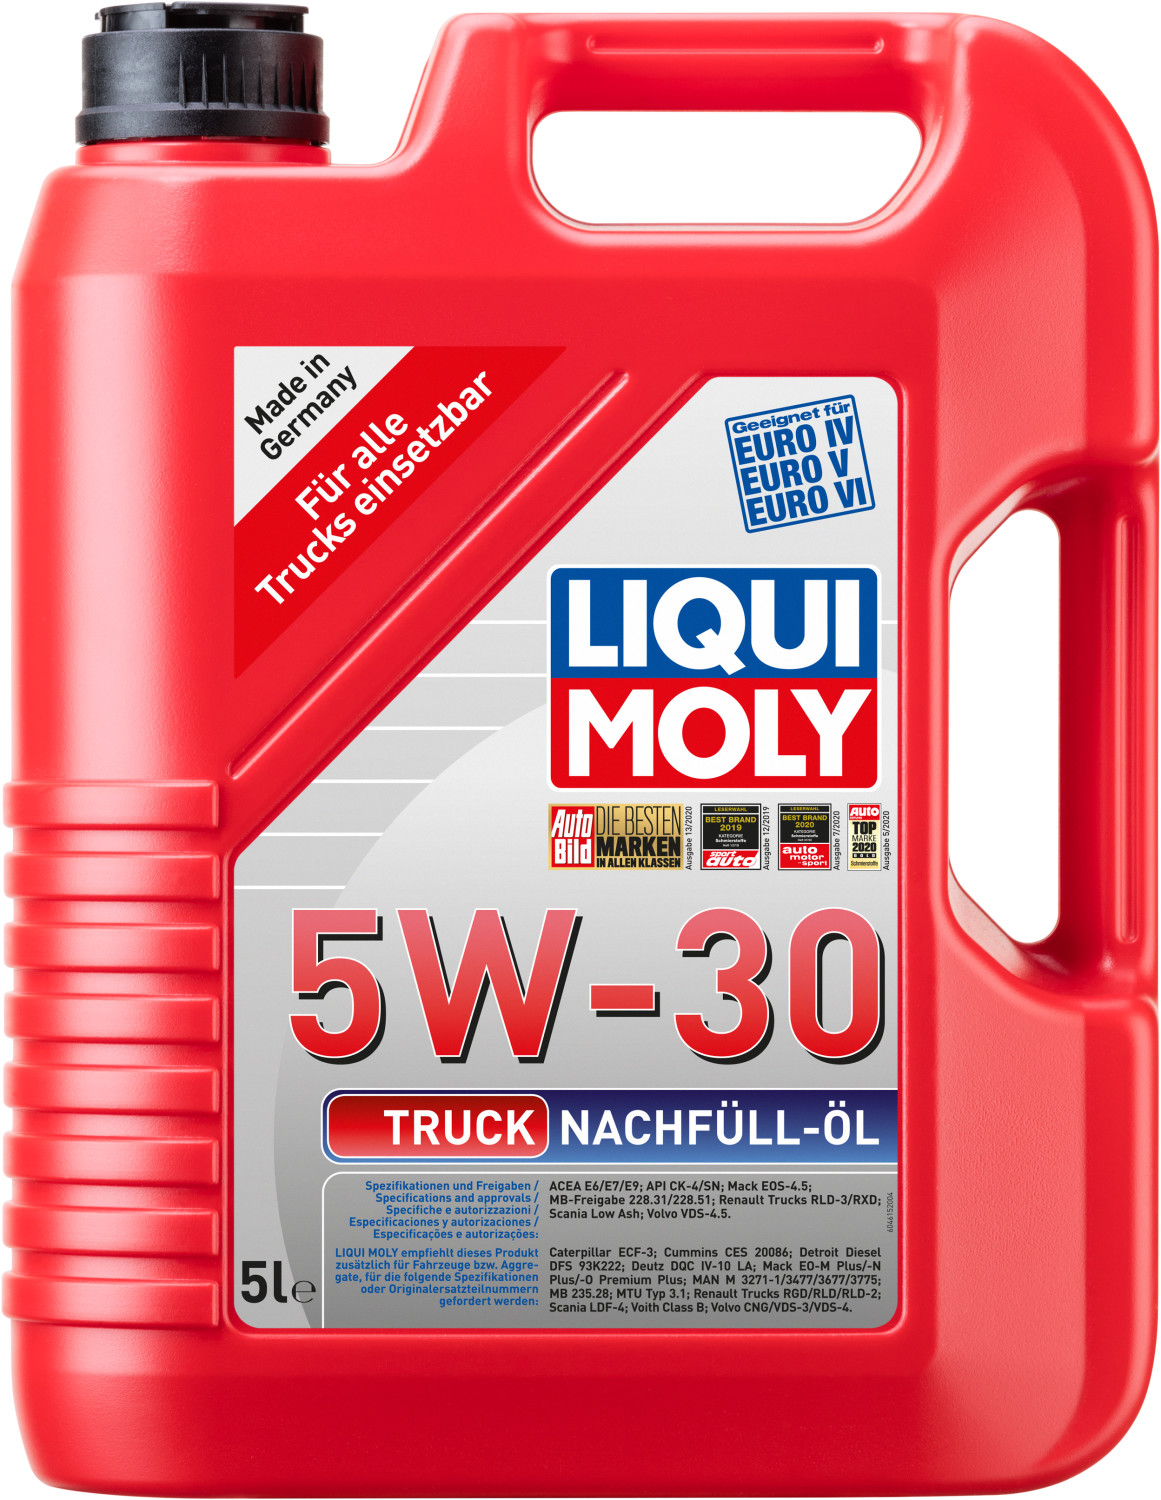 LIQUI MOLY Truck Nachfüll Öl 5W 30 (5 l) ab 56,15 €